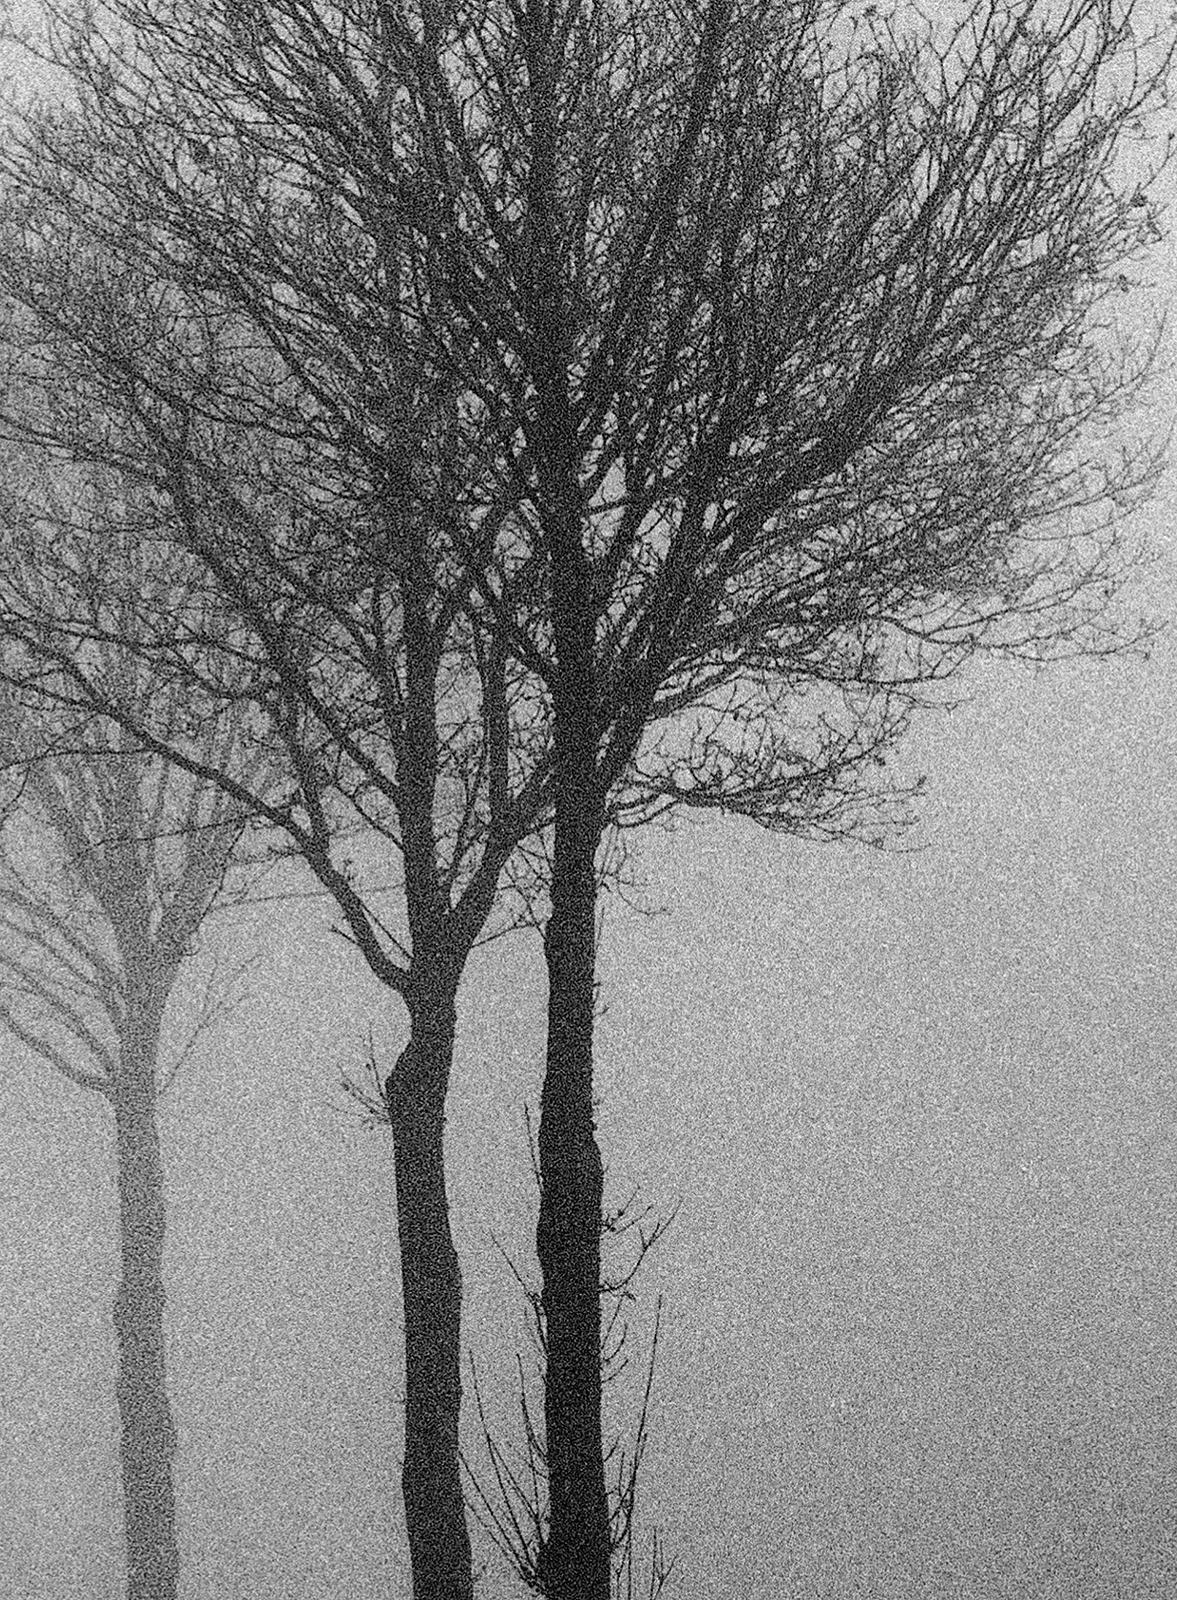 3 Trees - Impression nature en édition limitée signée, photo en blanc et noir, arbre dans la brume  - Photograph de Ian Sanderson